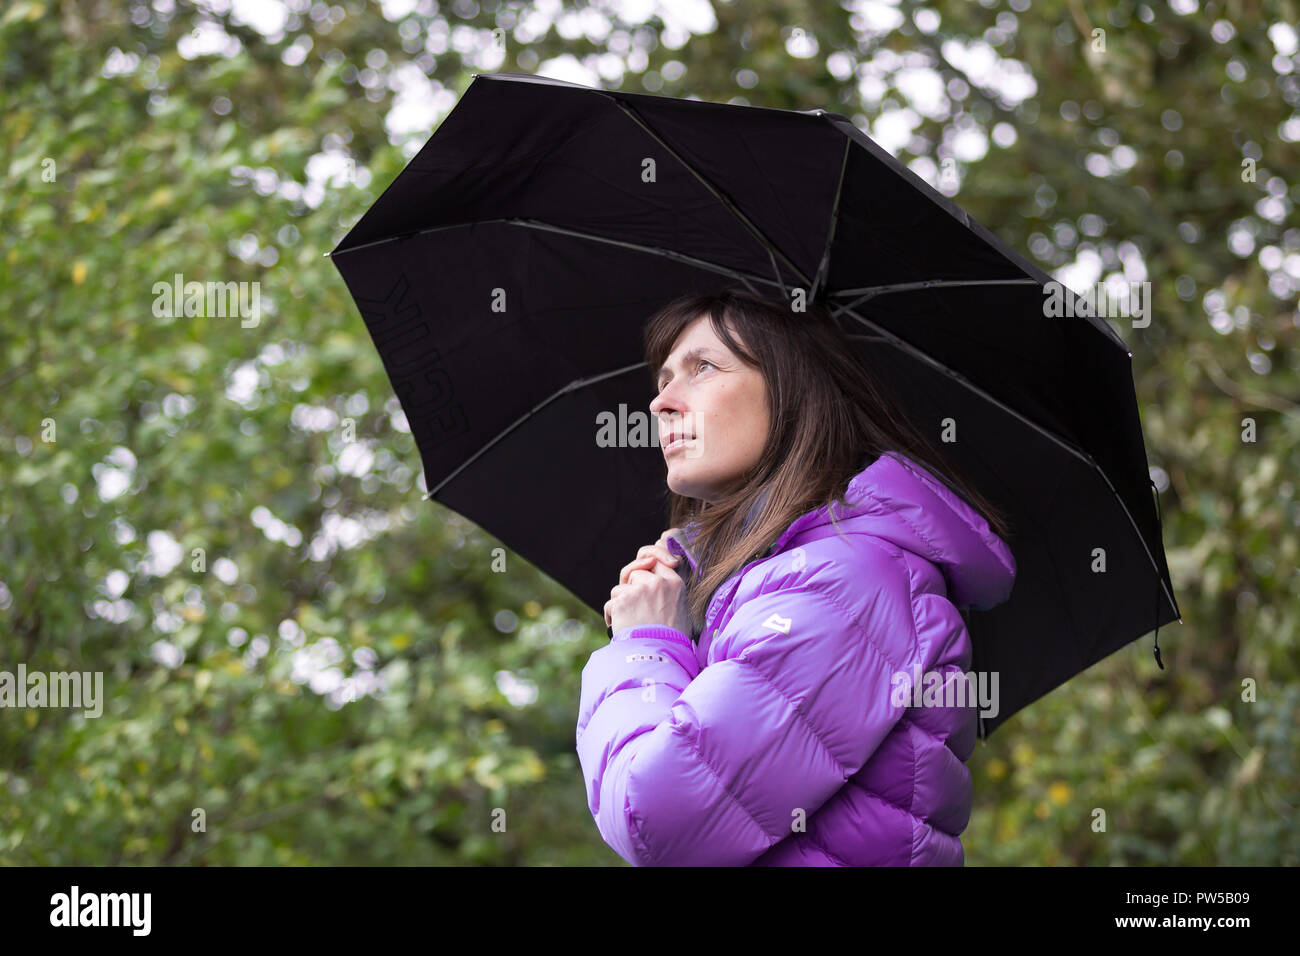 Vue latérale rapprochée d'une femme portant un manteau isolée à l'extérieur, tenant un parapluie noir et regardant vers le haut. Banque D'Images